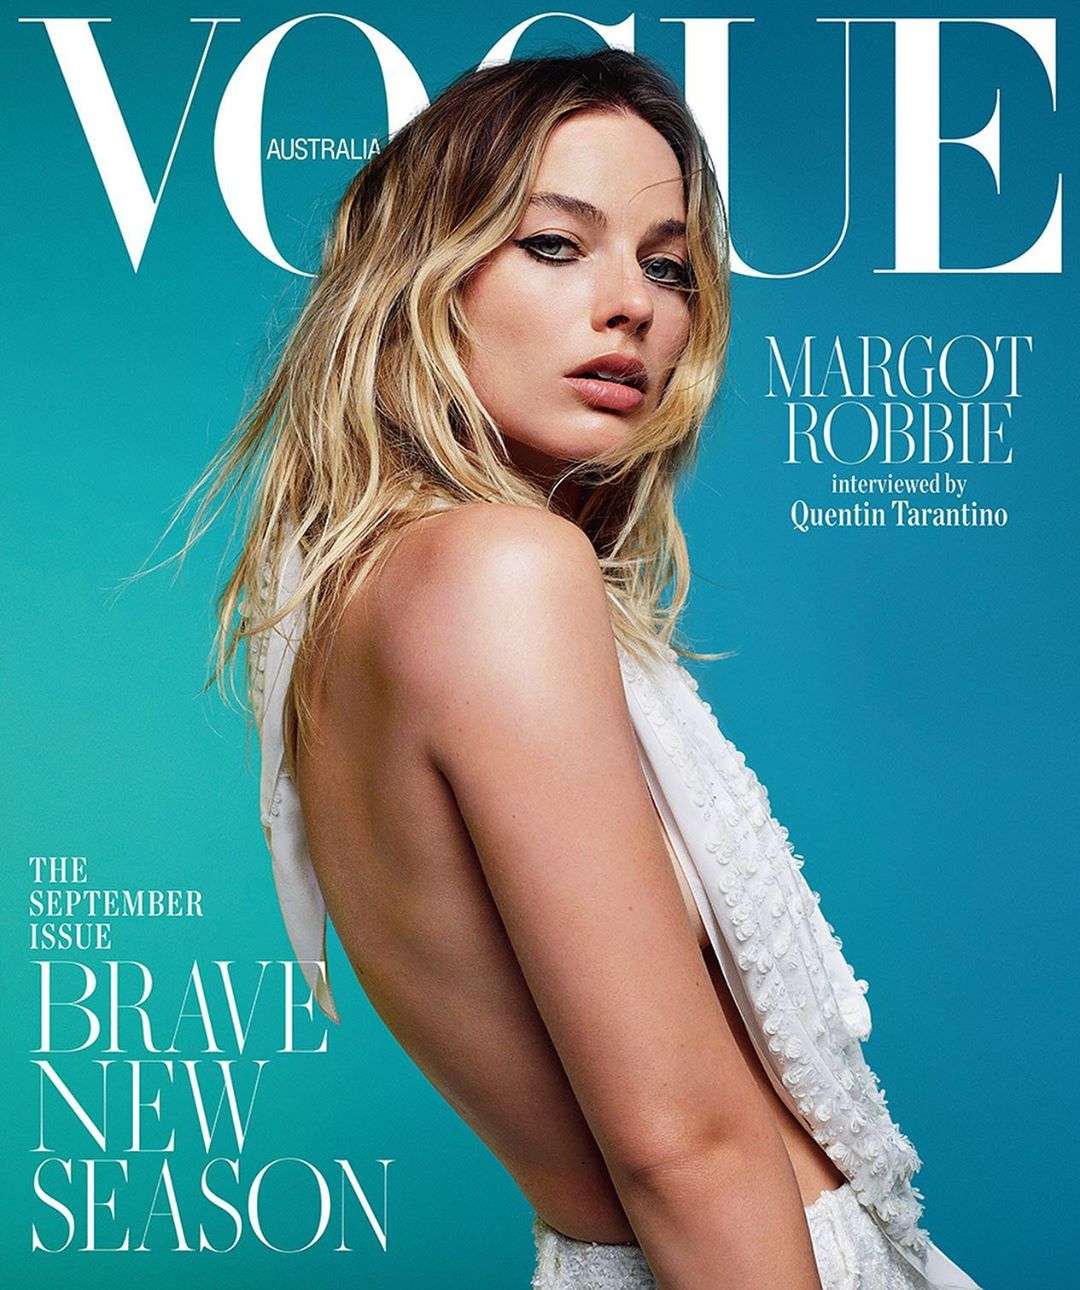 Марго Робби украсила обложку Vogue, но фанов напугал ее худощавый вид - фото 446826